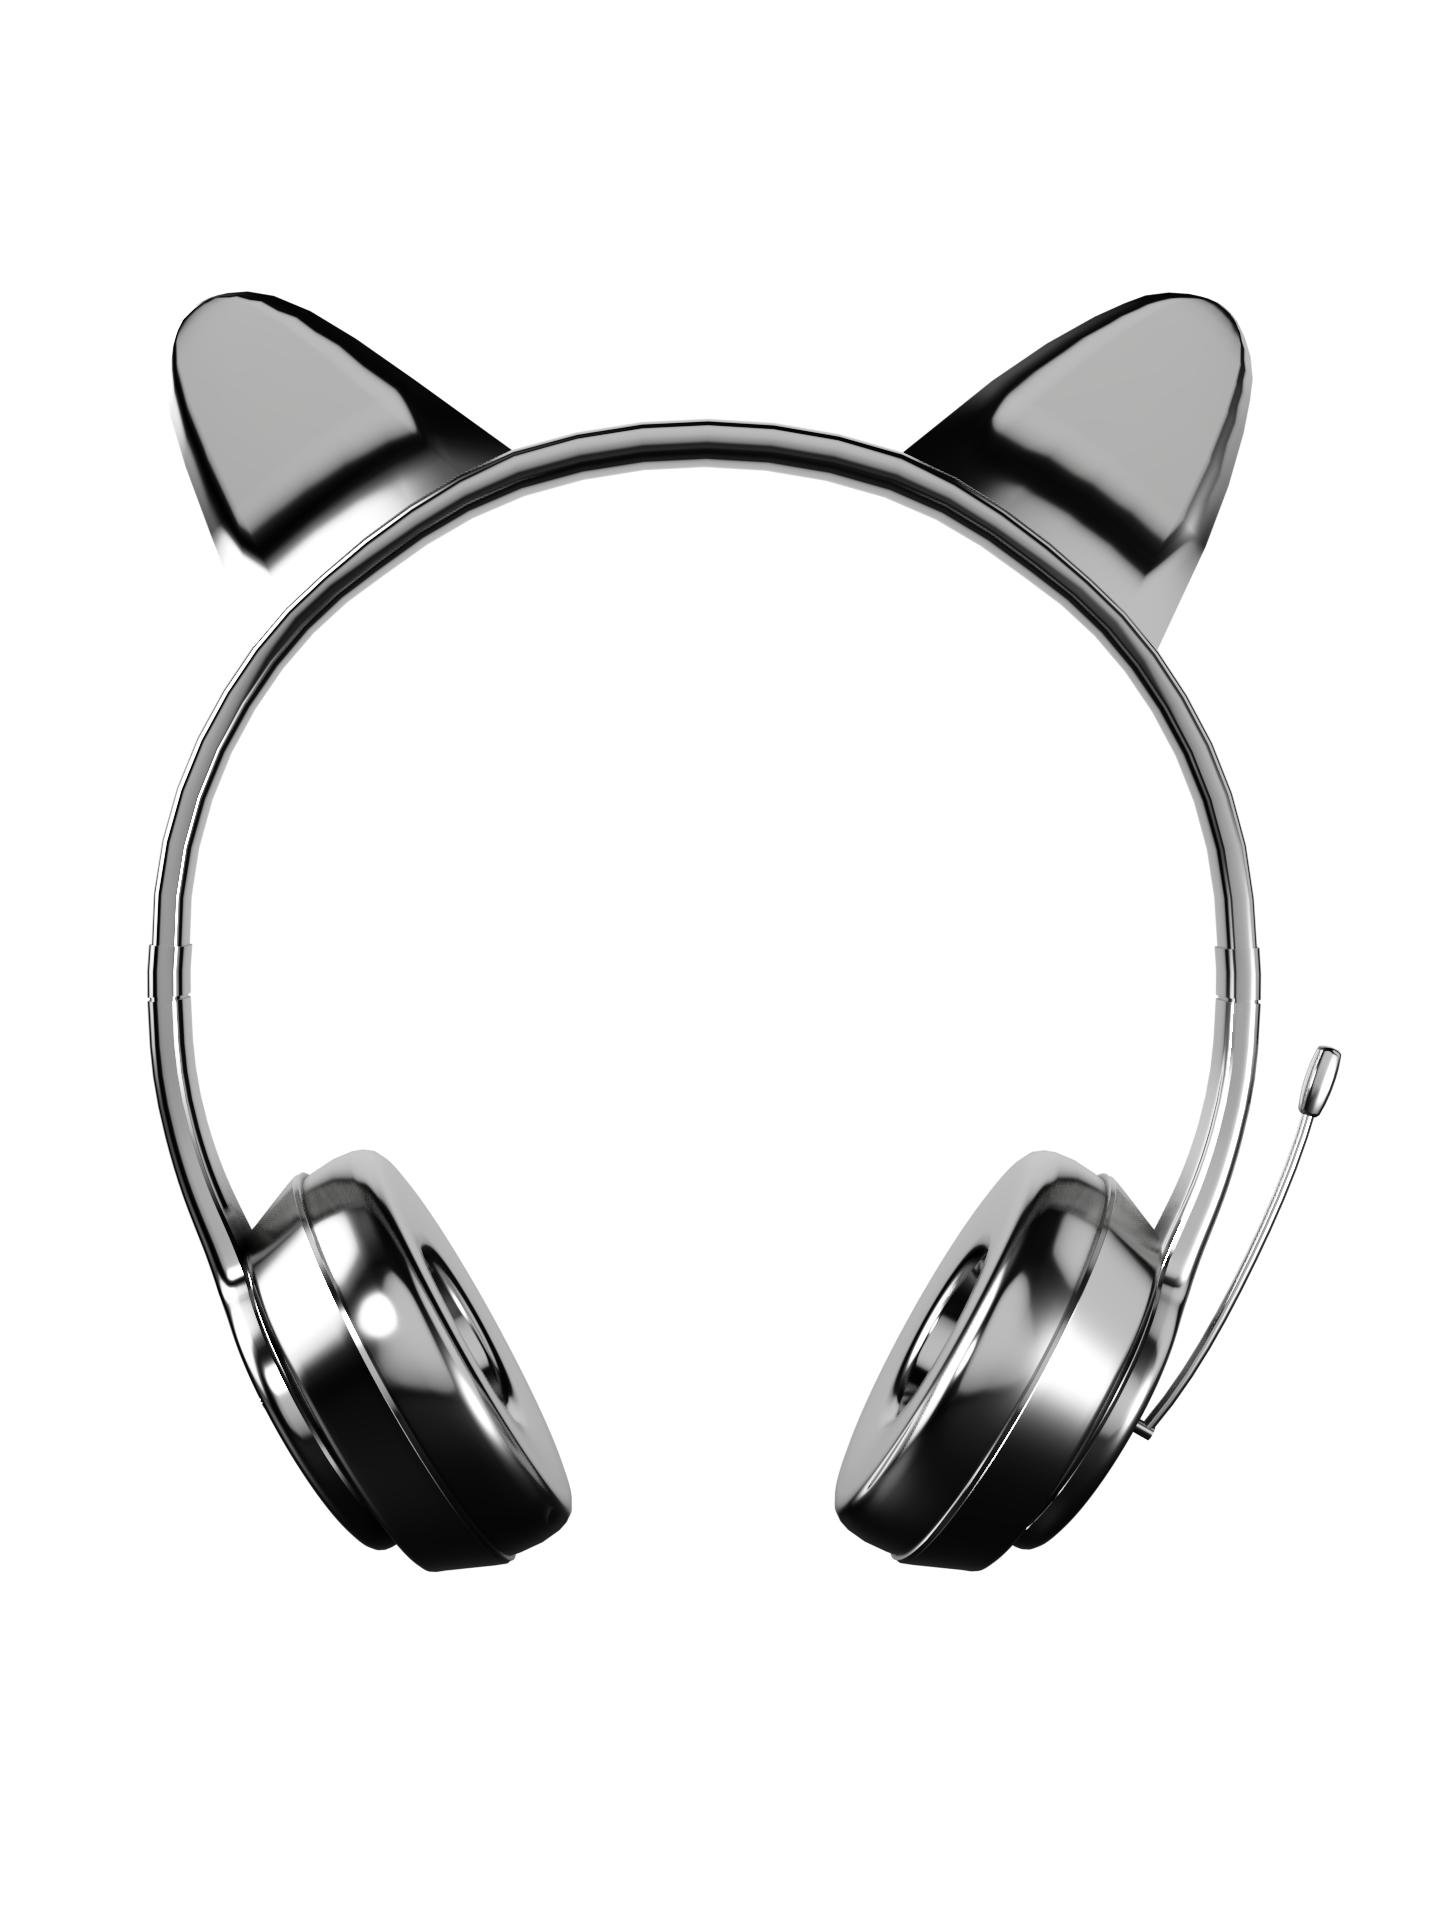 Feline Headphones by R3N3GADES